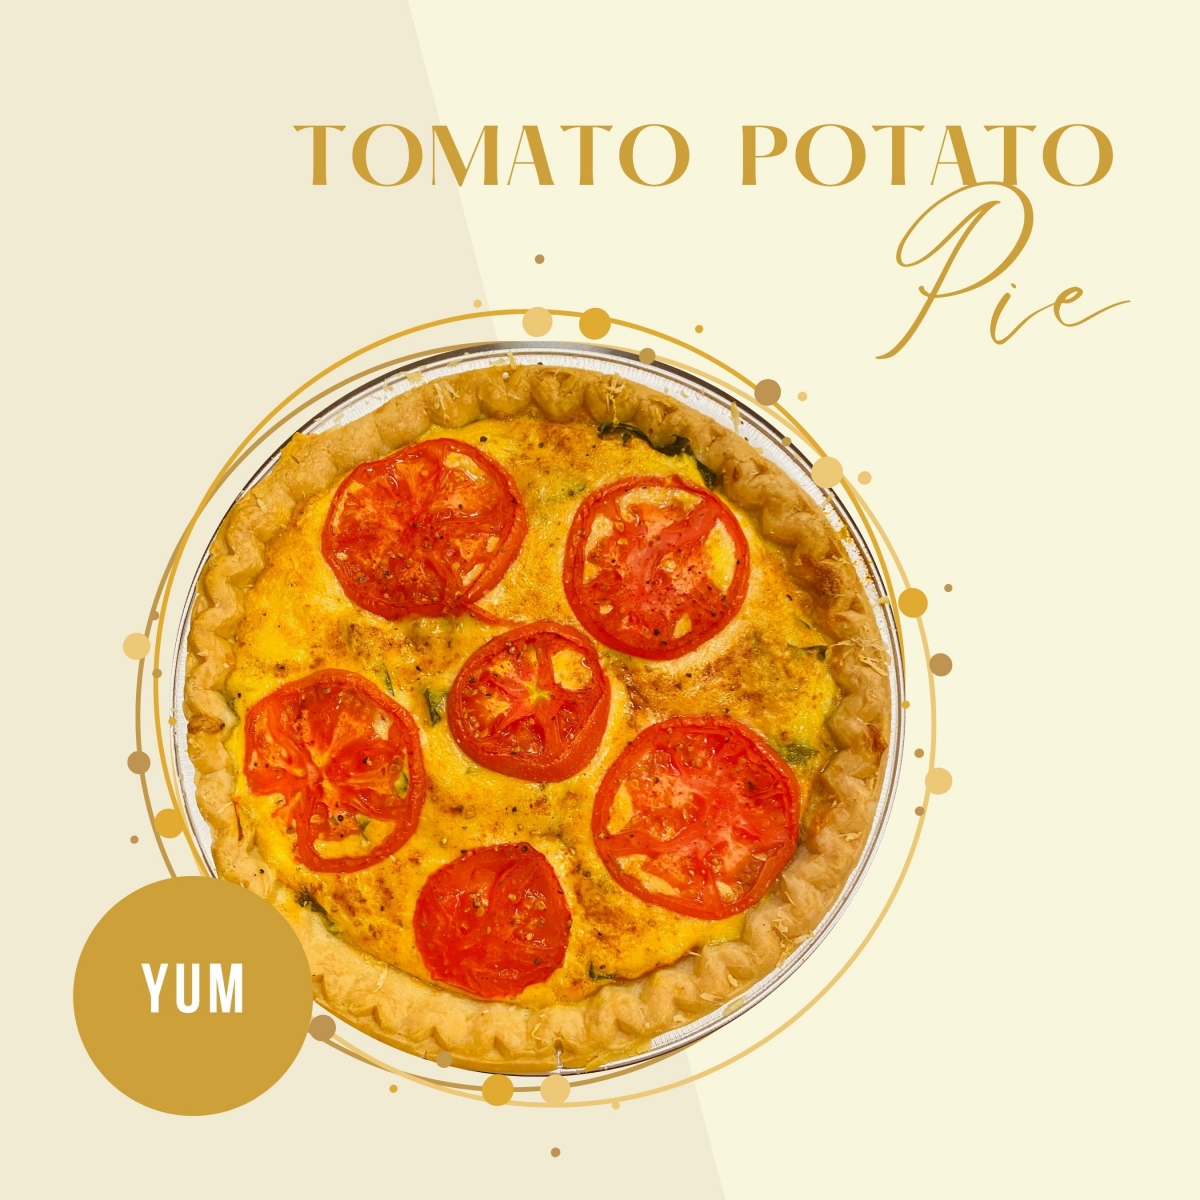 Tomato Potato Pie